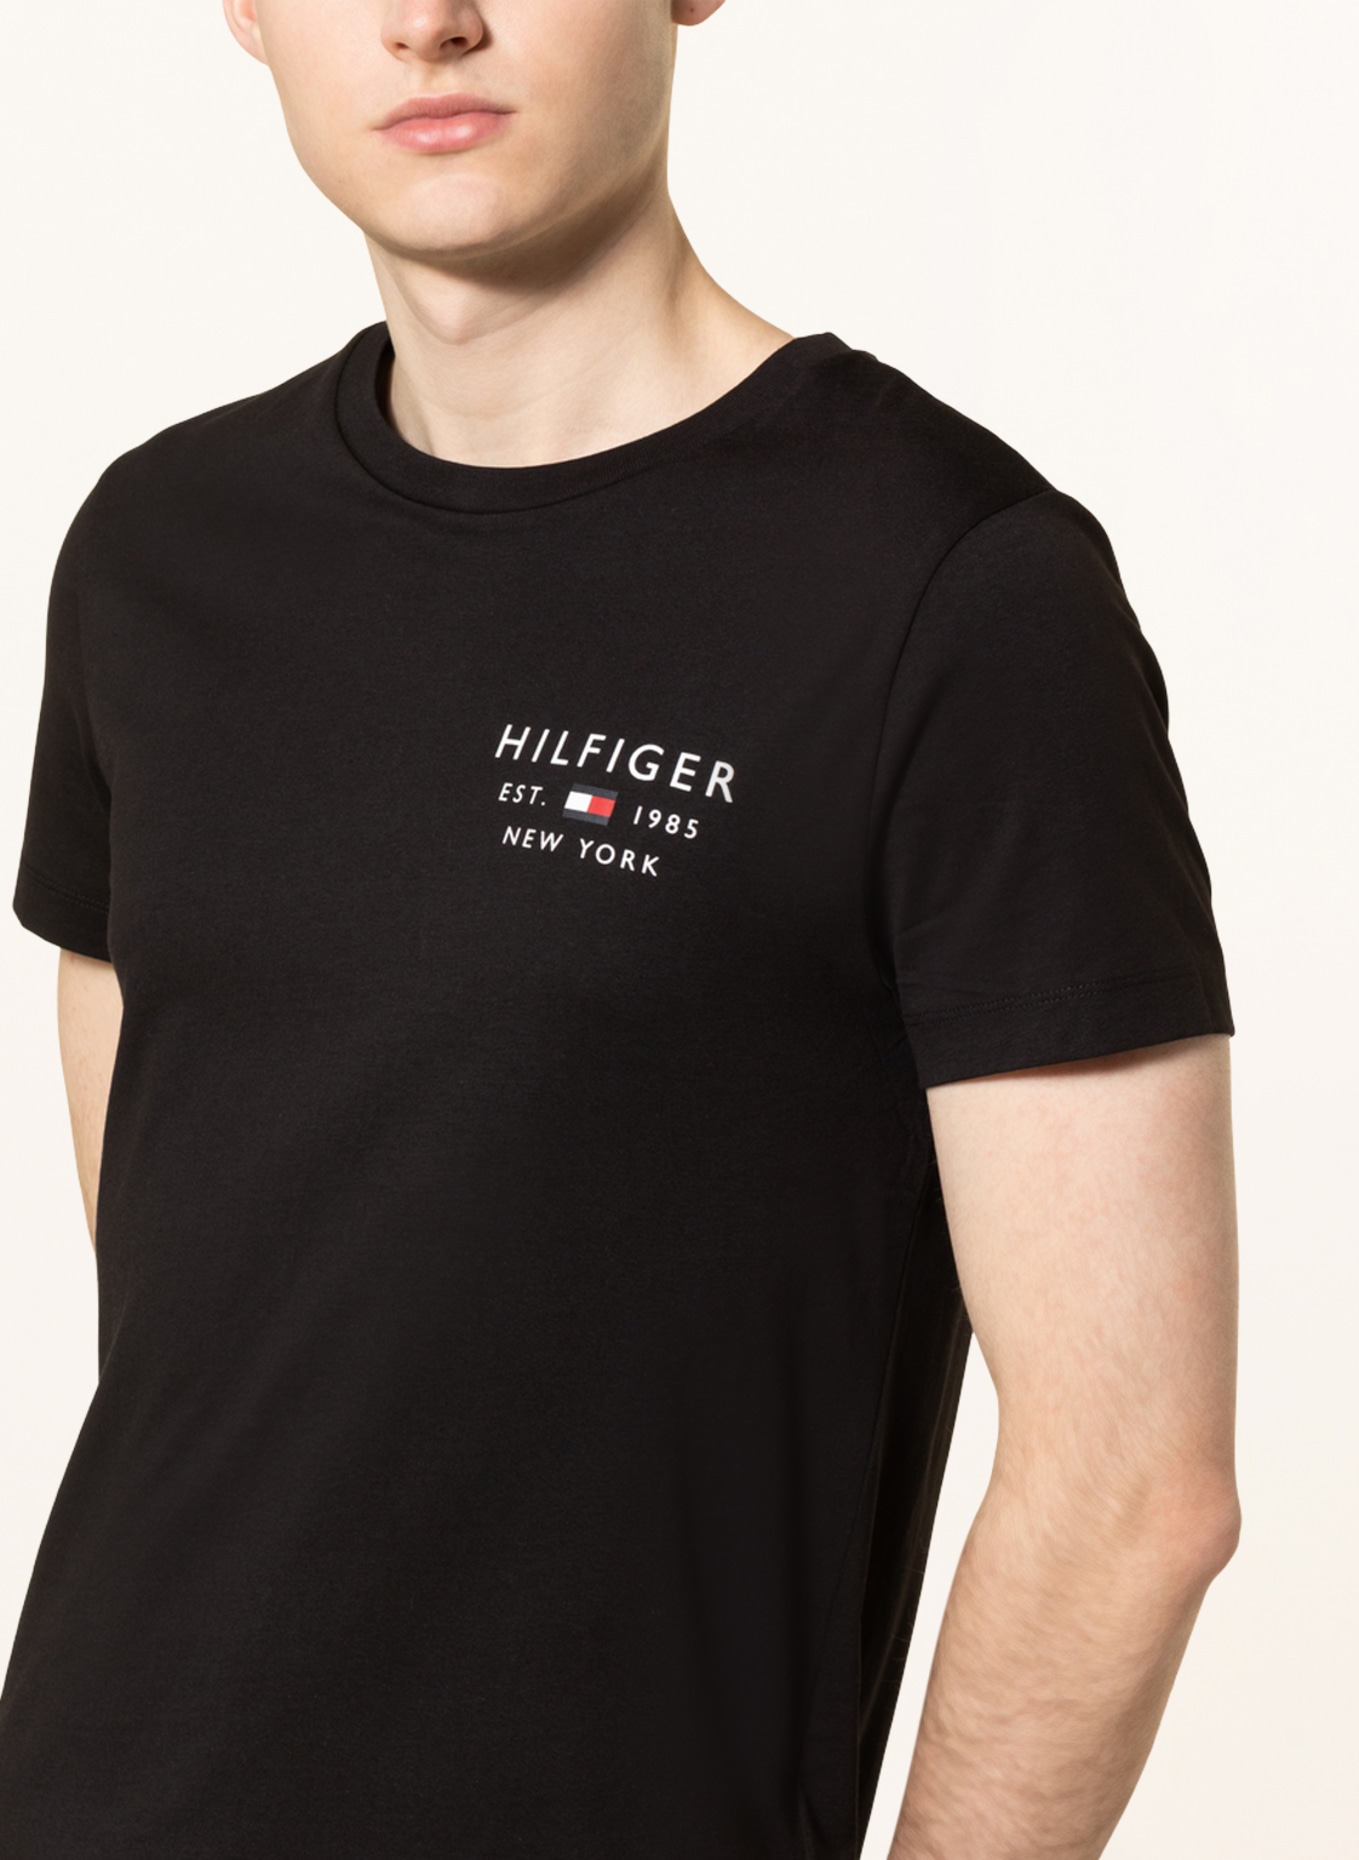 TOMMY HILFIGER T-Shirt, Farbe: SCHWARZ (Bild 4)